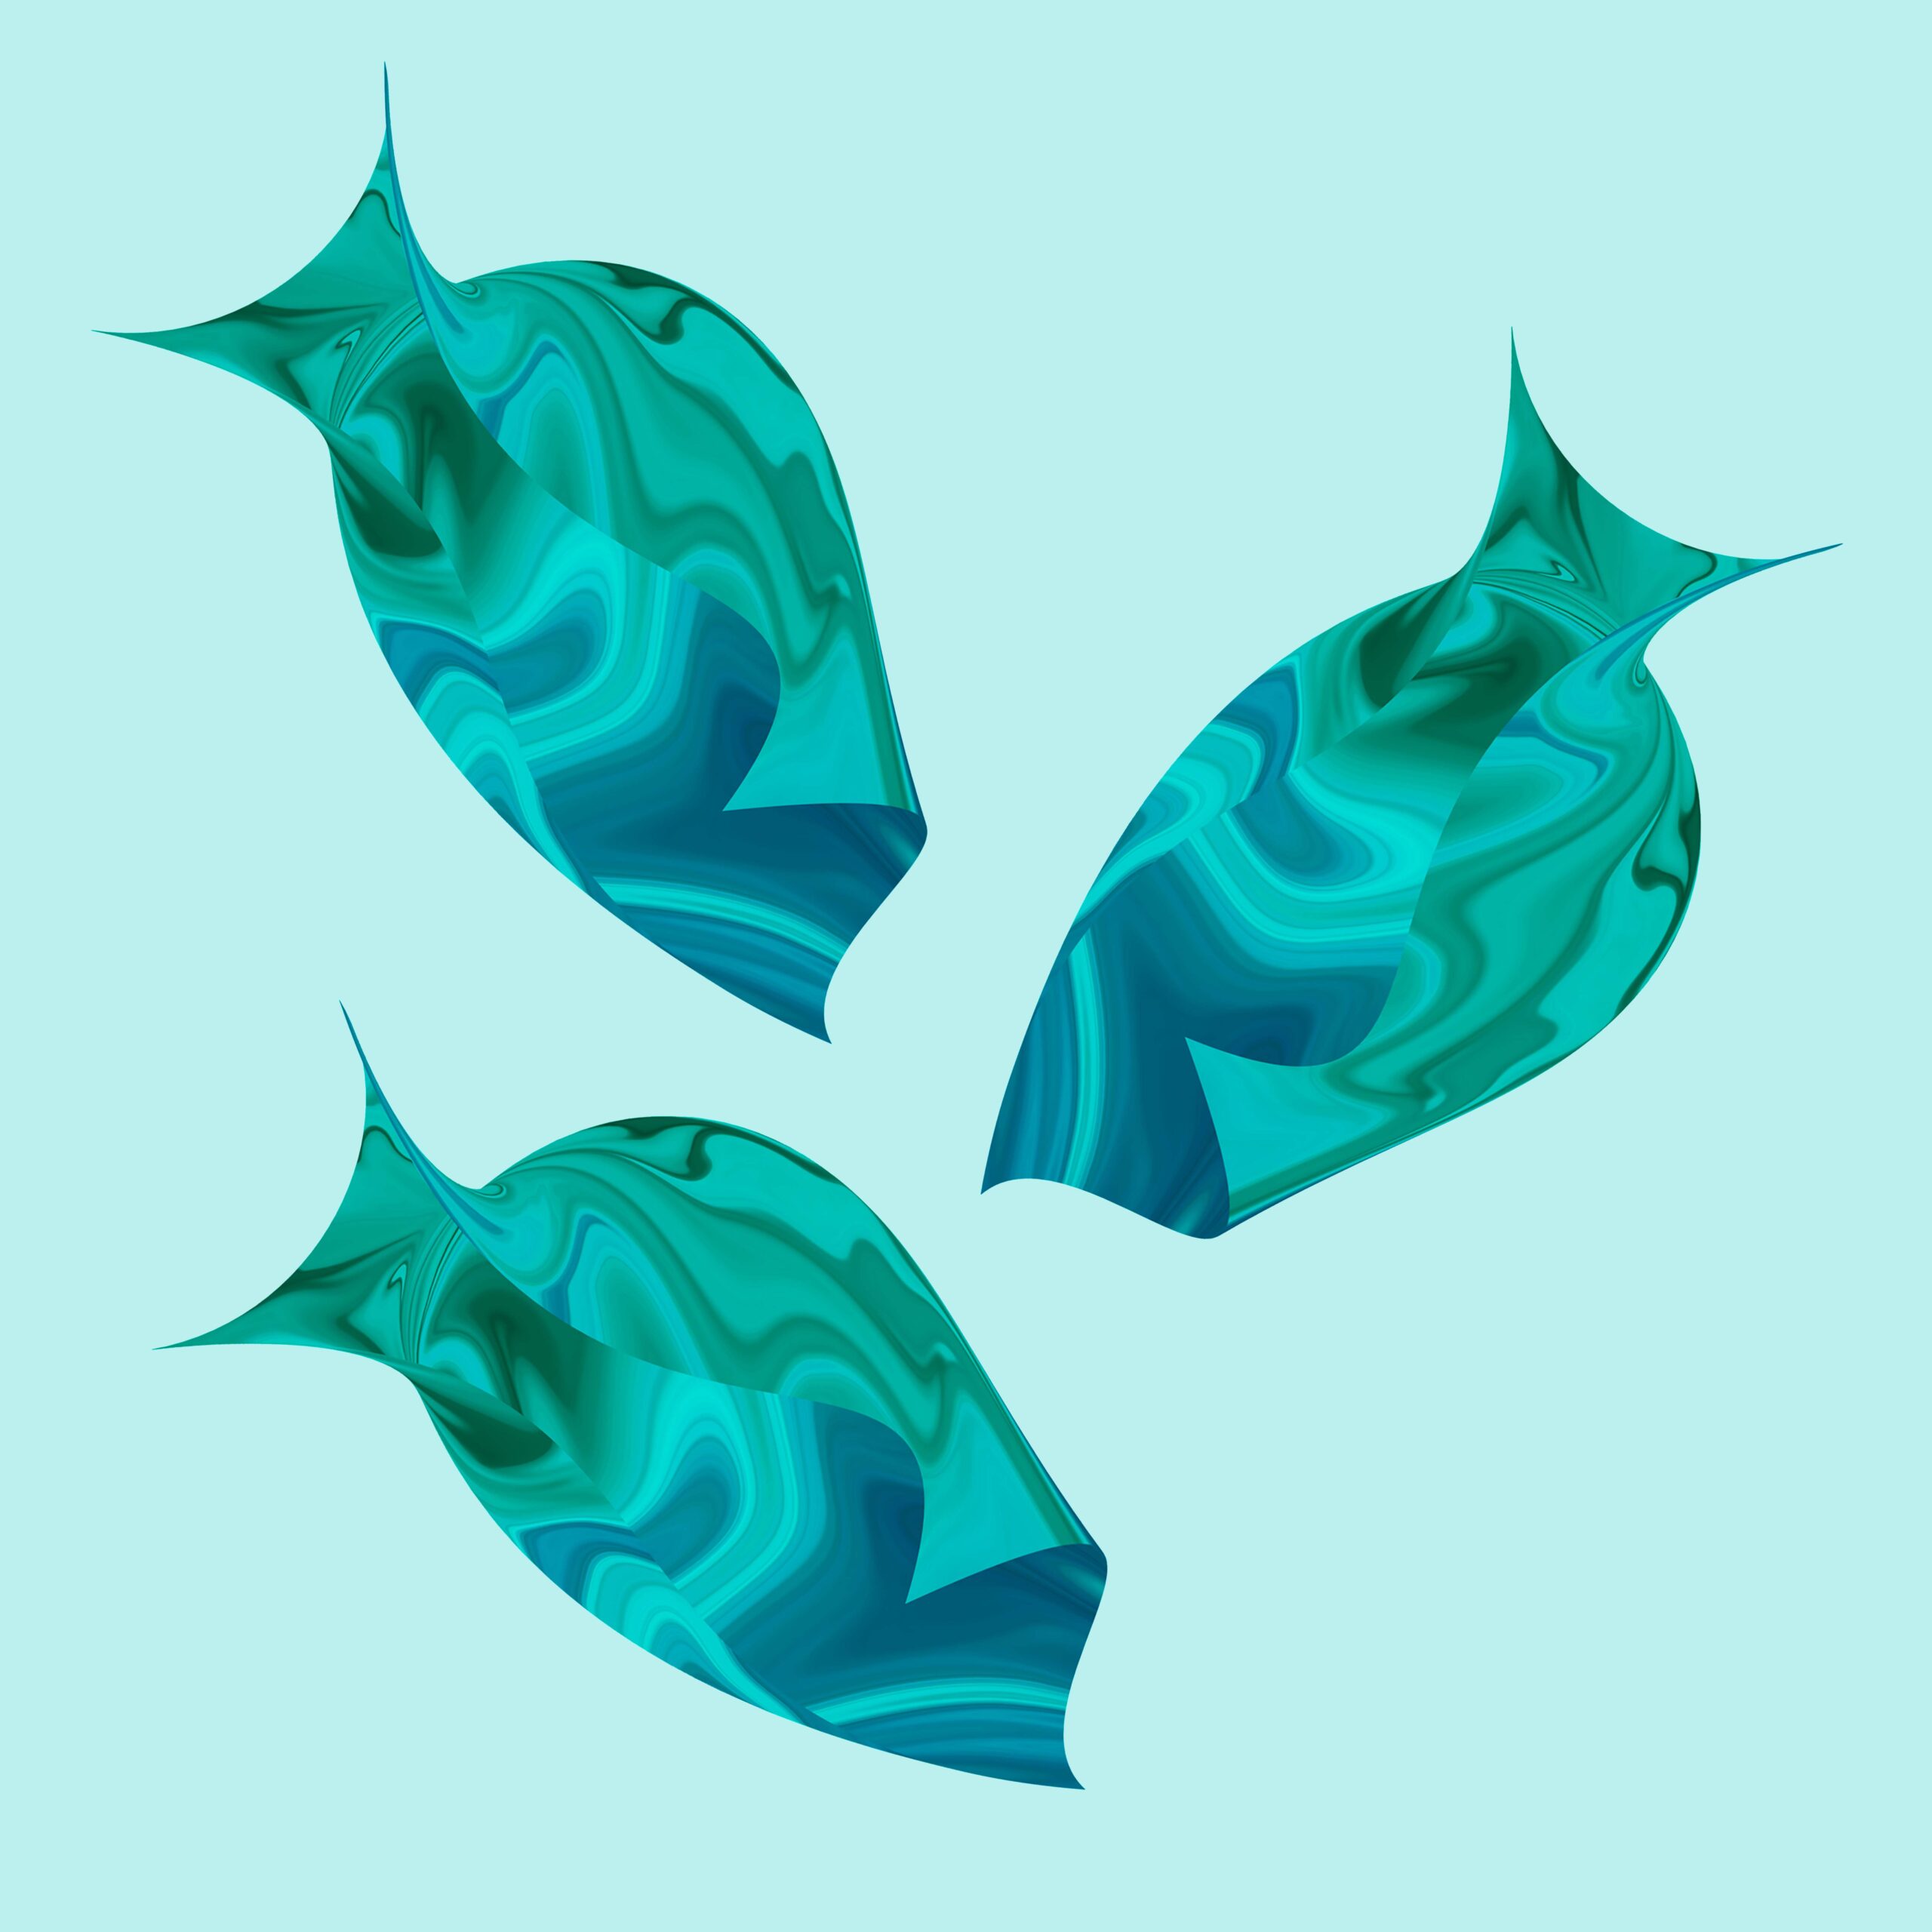 Three blue fish are shown in a square.